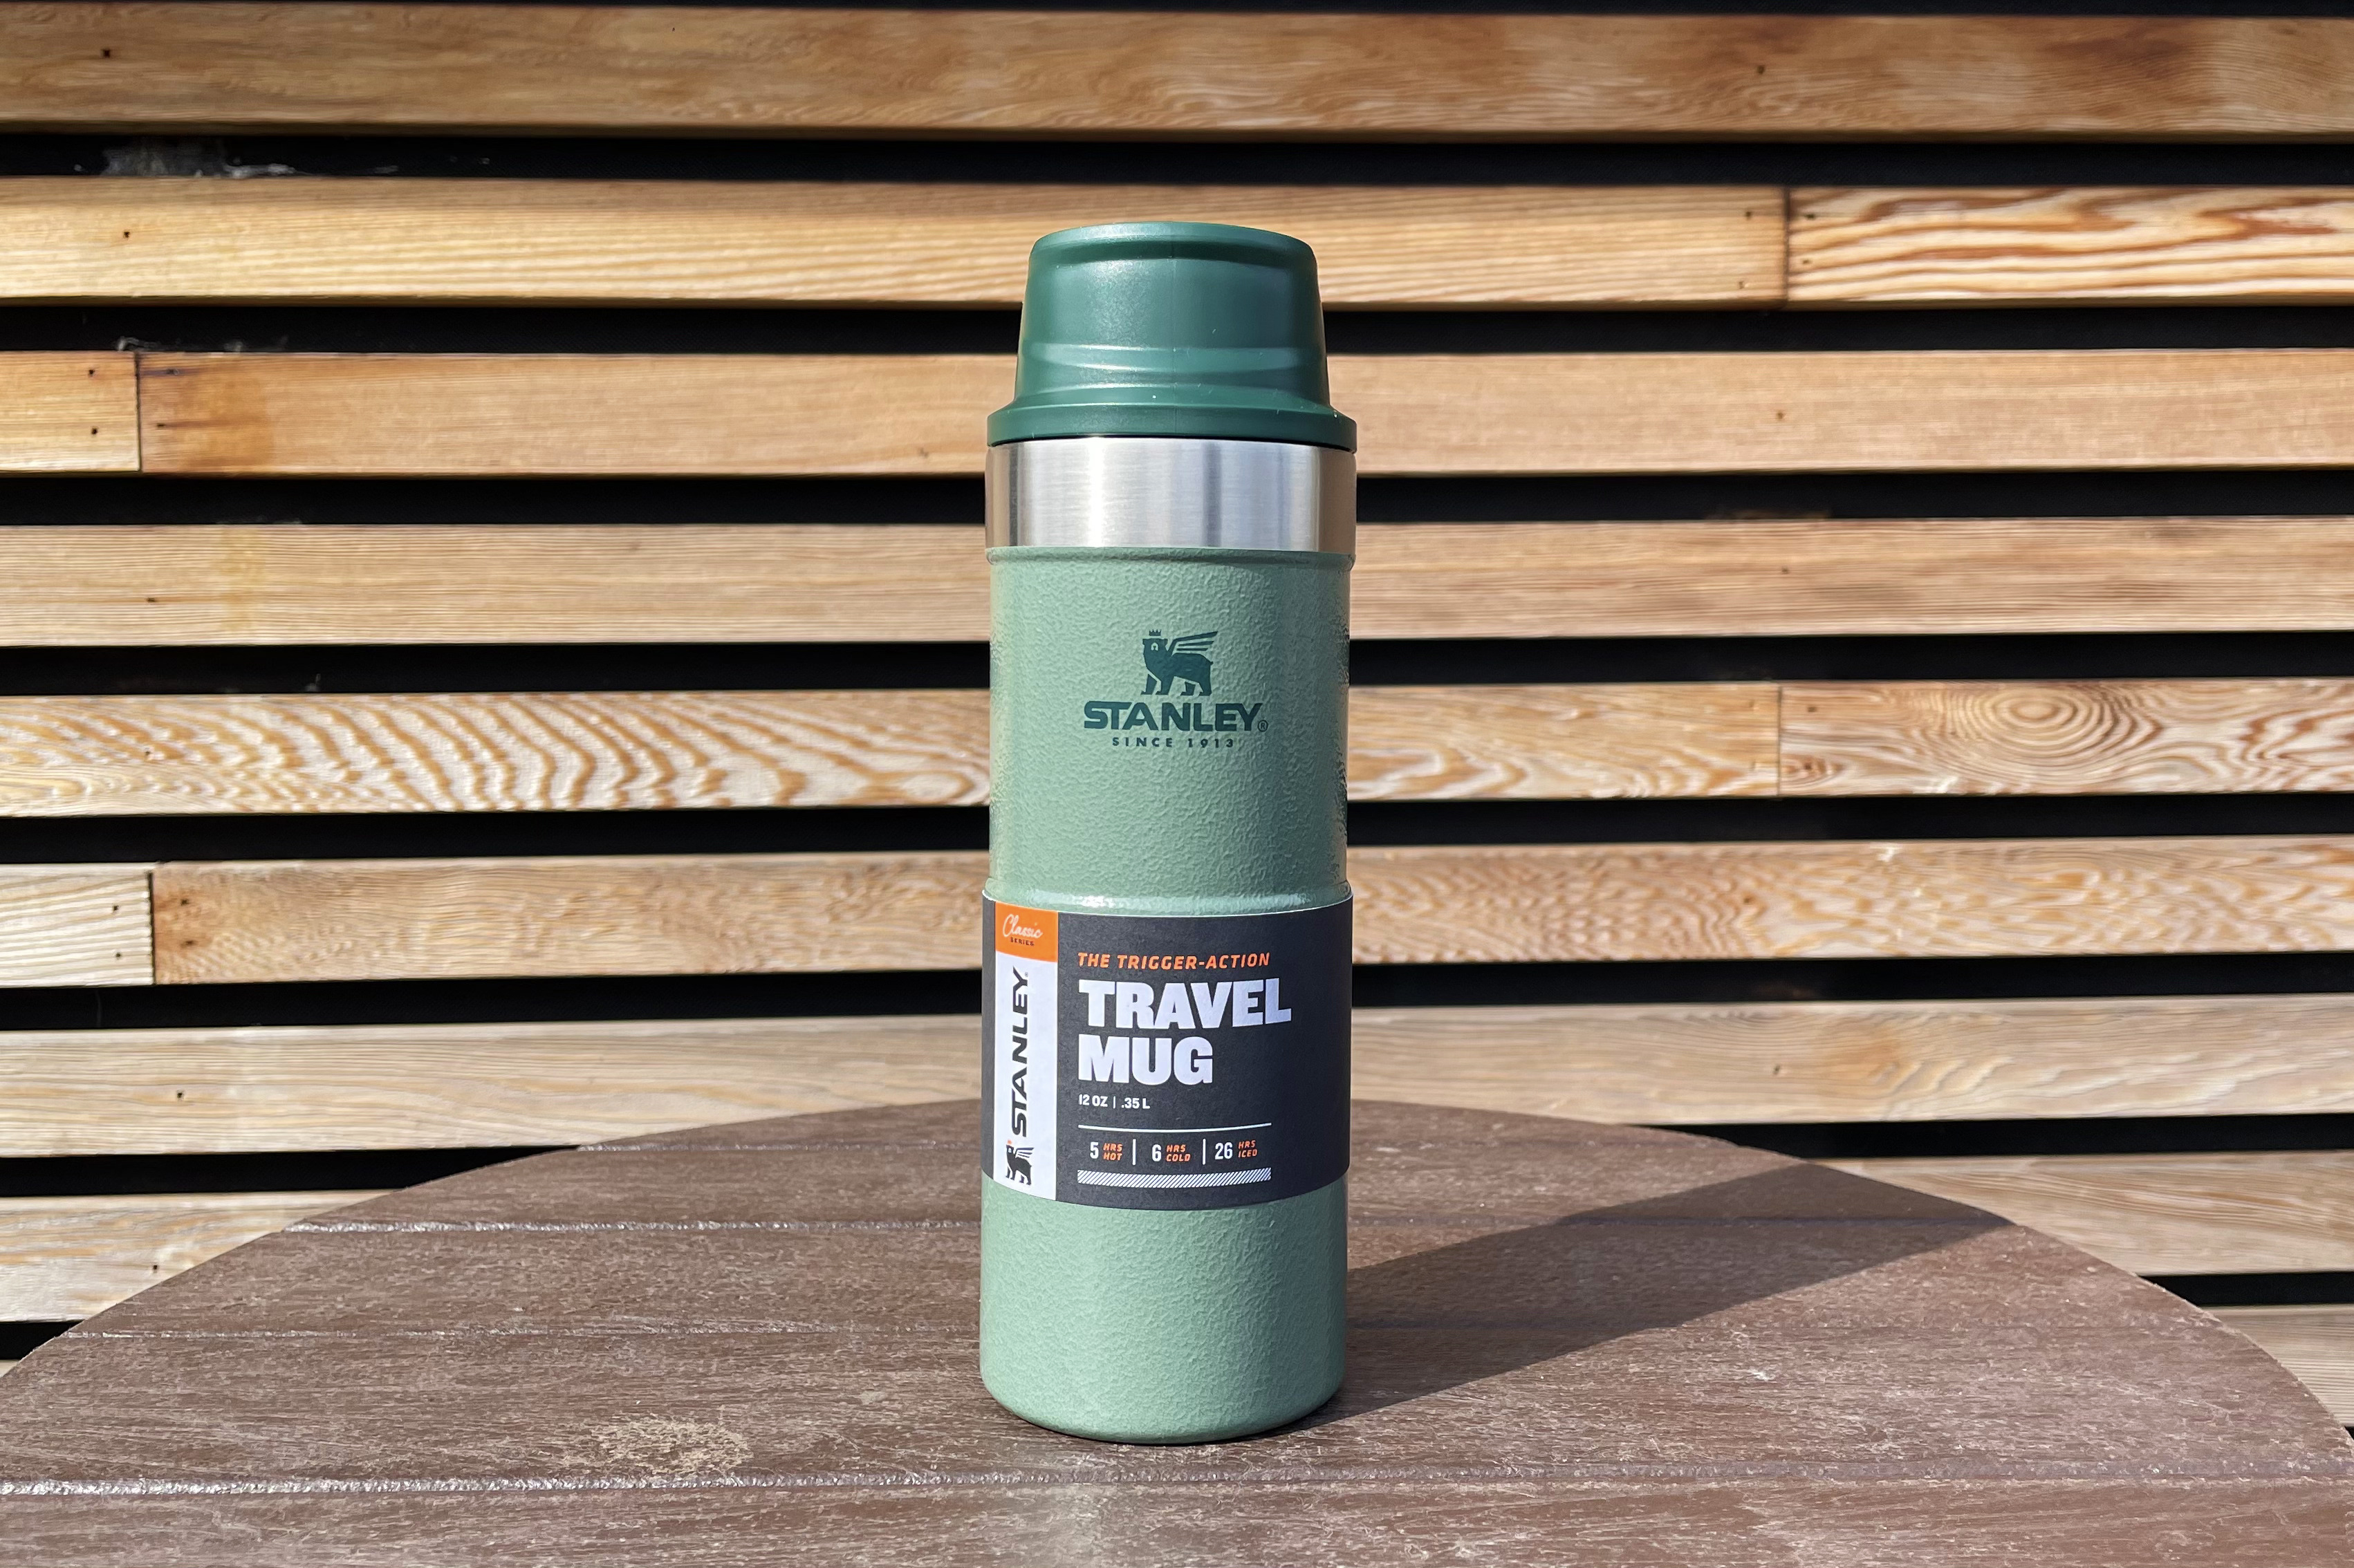  STANLEY Trigger Action Travel Mug 0.35L - Keeps Hot